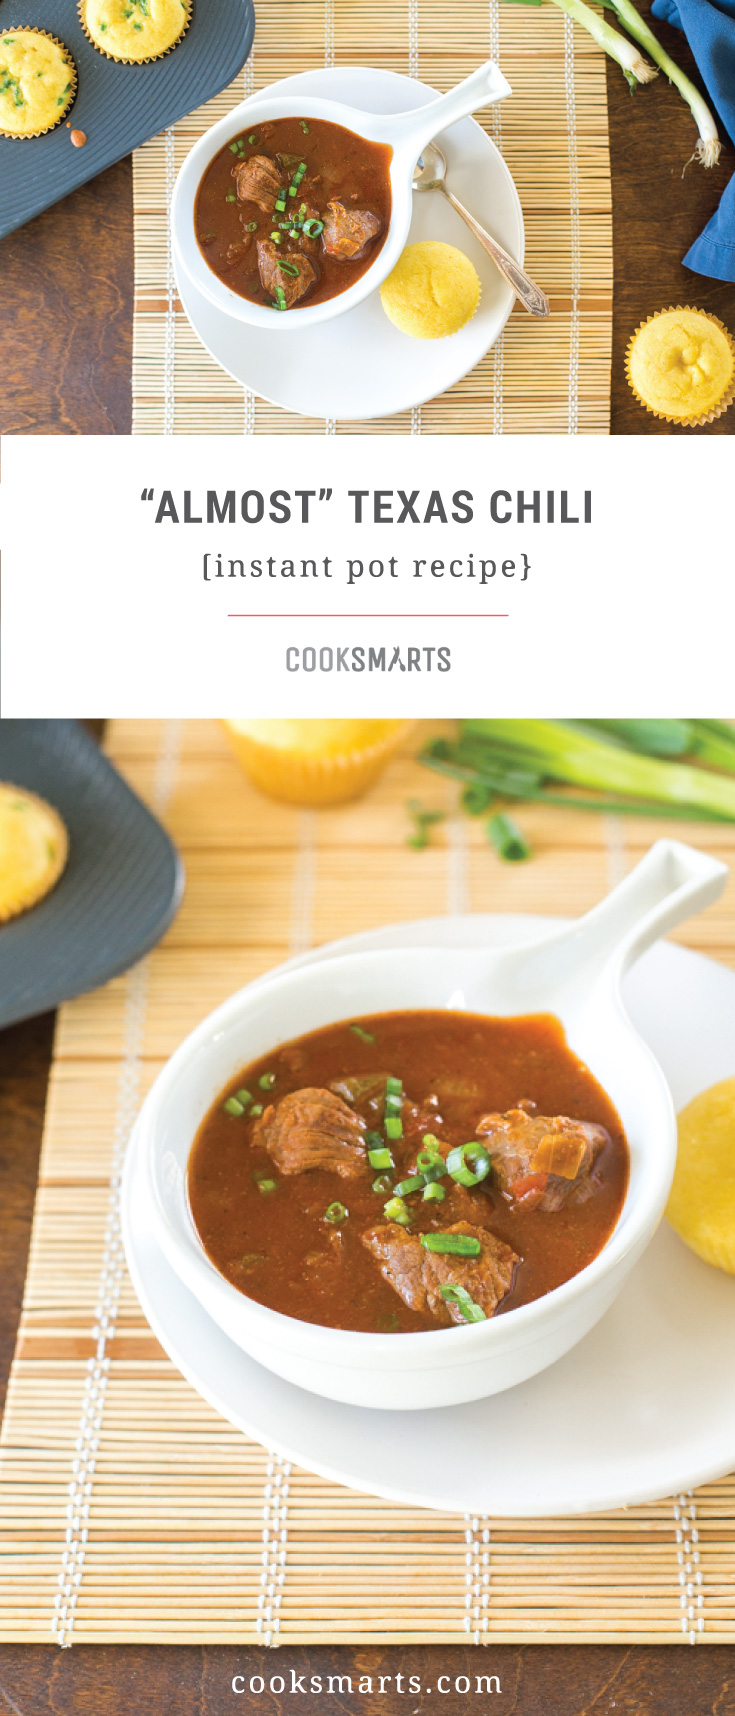 Instant Pot Chili Recipe: Almost Texas Chili via @cooksmarts